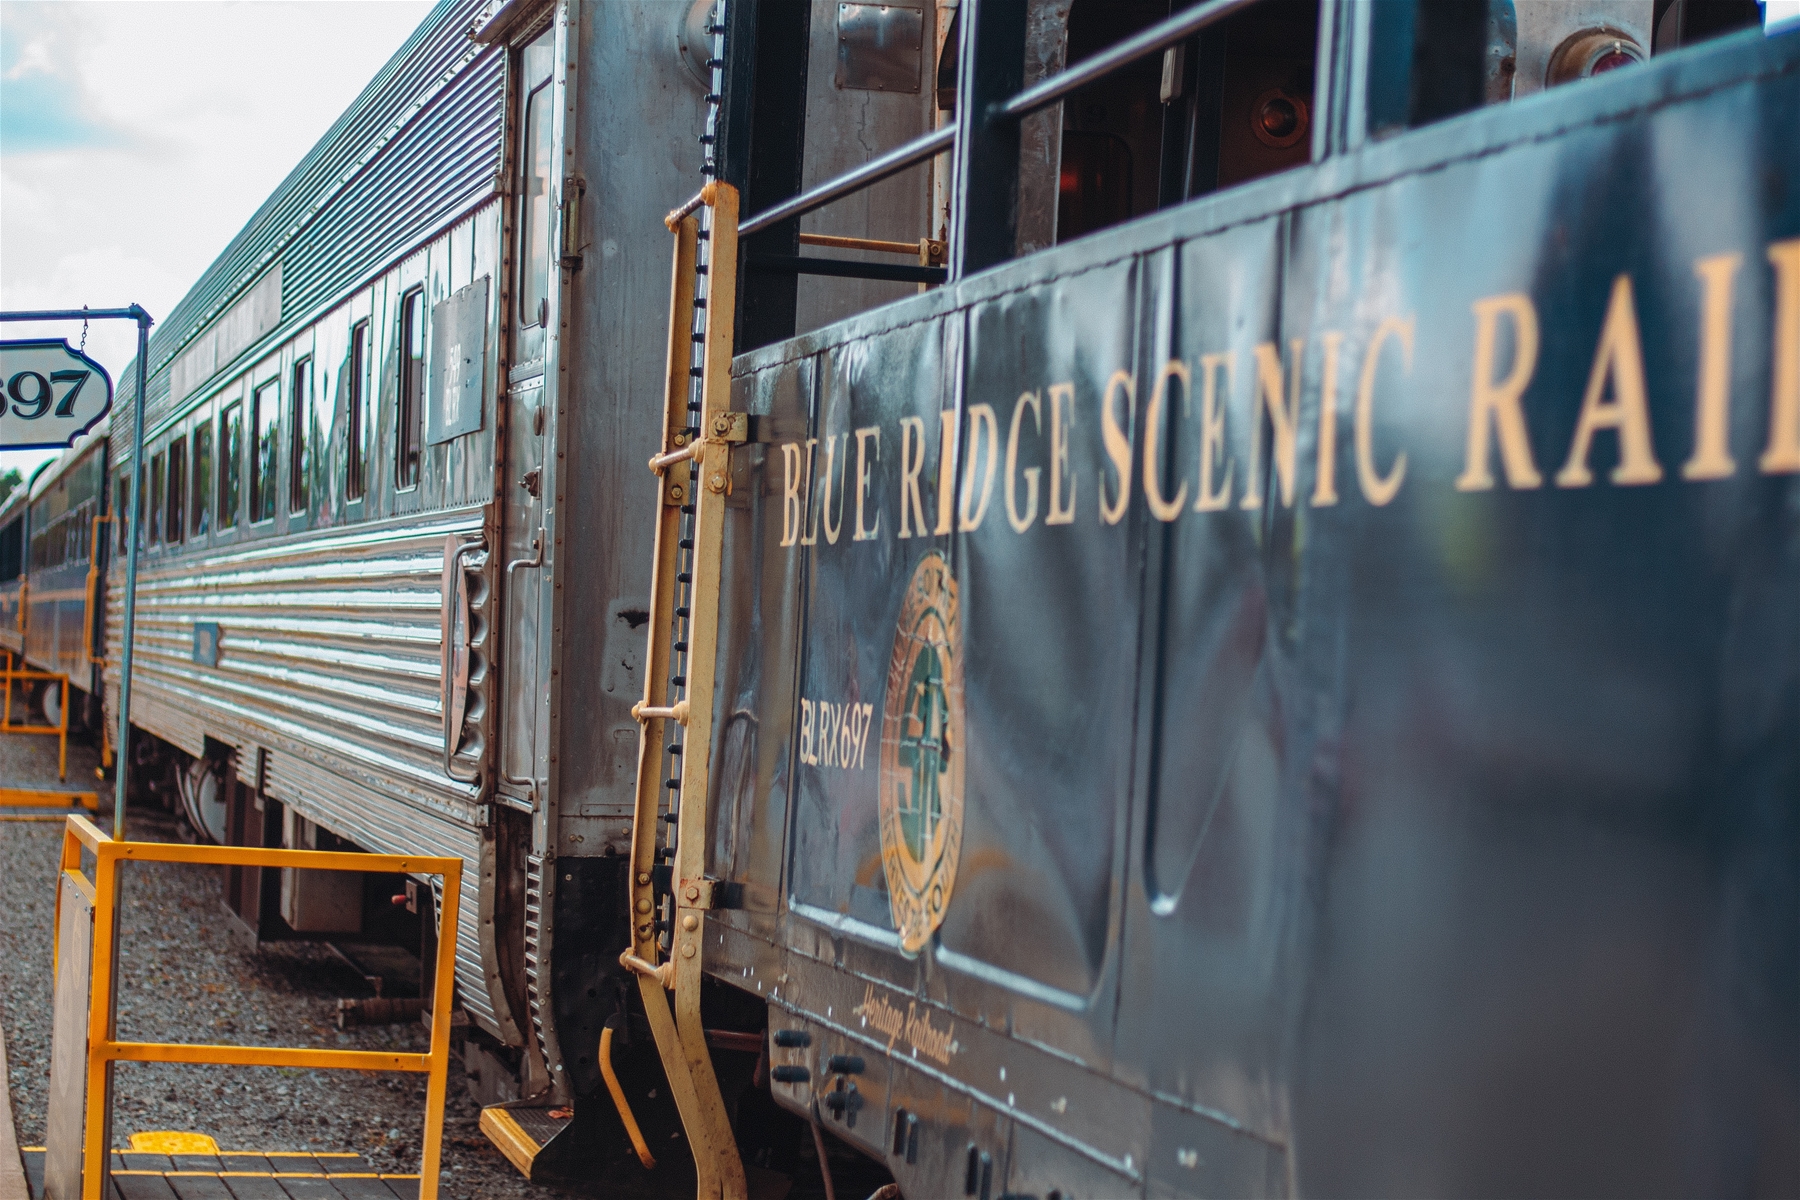 Blue Ridge Scenic Railroad Train and Cars